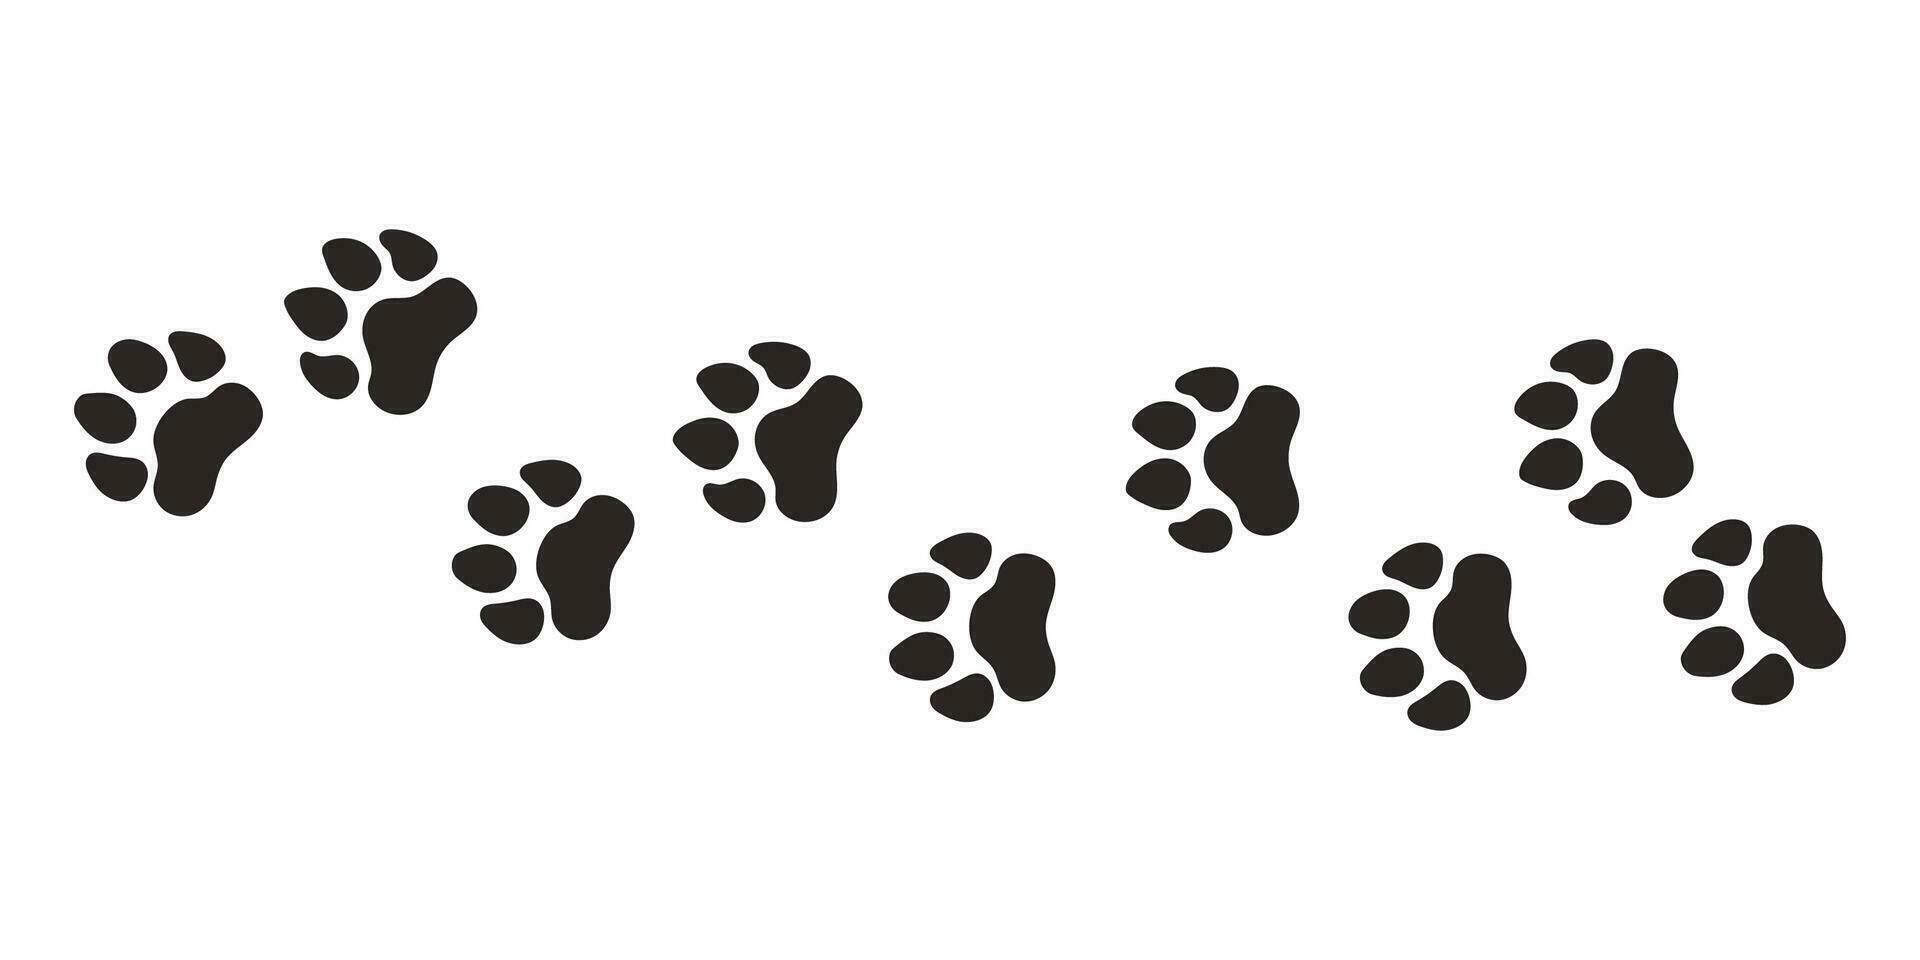 tiger tassar. djur- Tass grafik, vektor annorlunda djur fotspår svart på vit bakgrund illustration